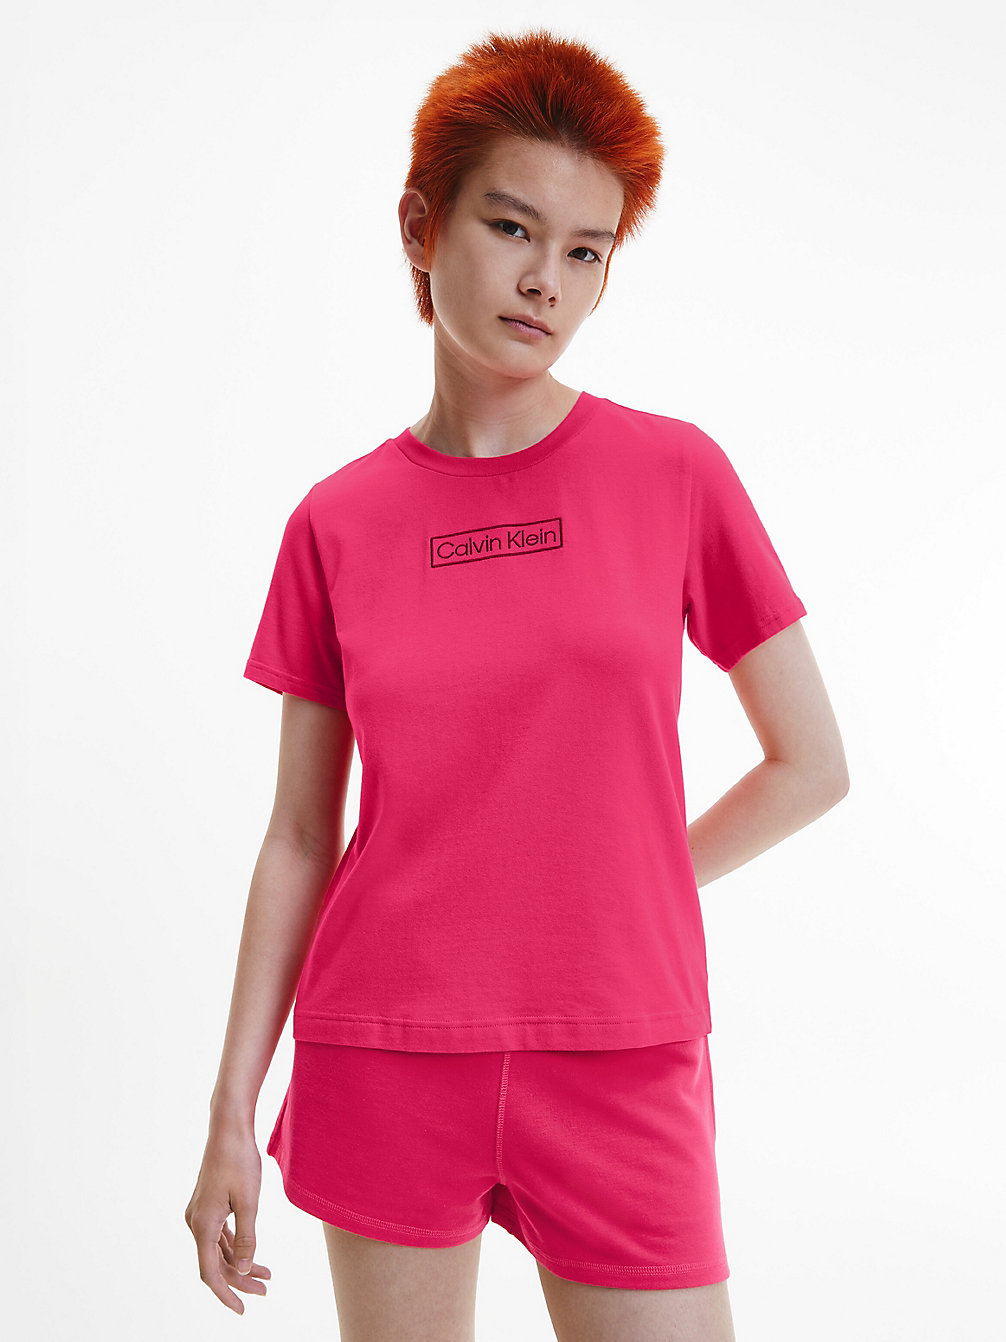 PINK SPLENDOR > Пижама с шортами - Reimagined Heritage > undefined Женщины - Calvin Klein